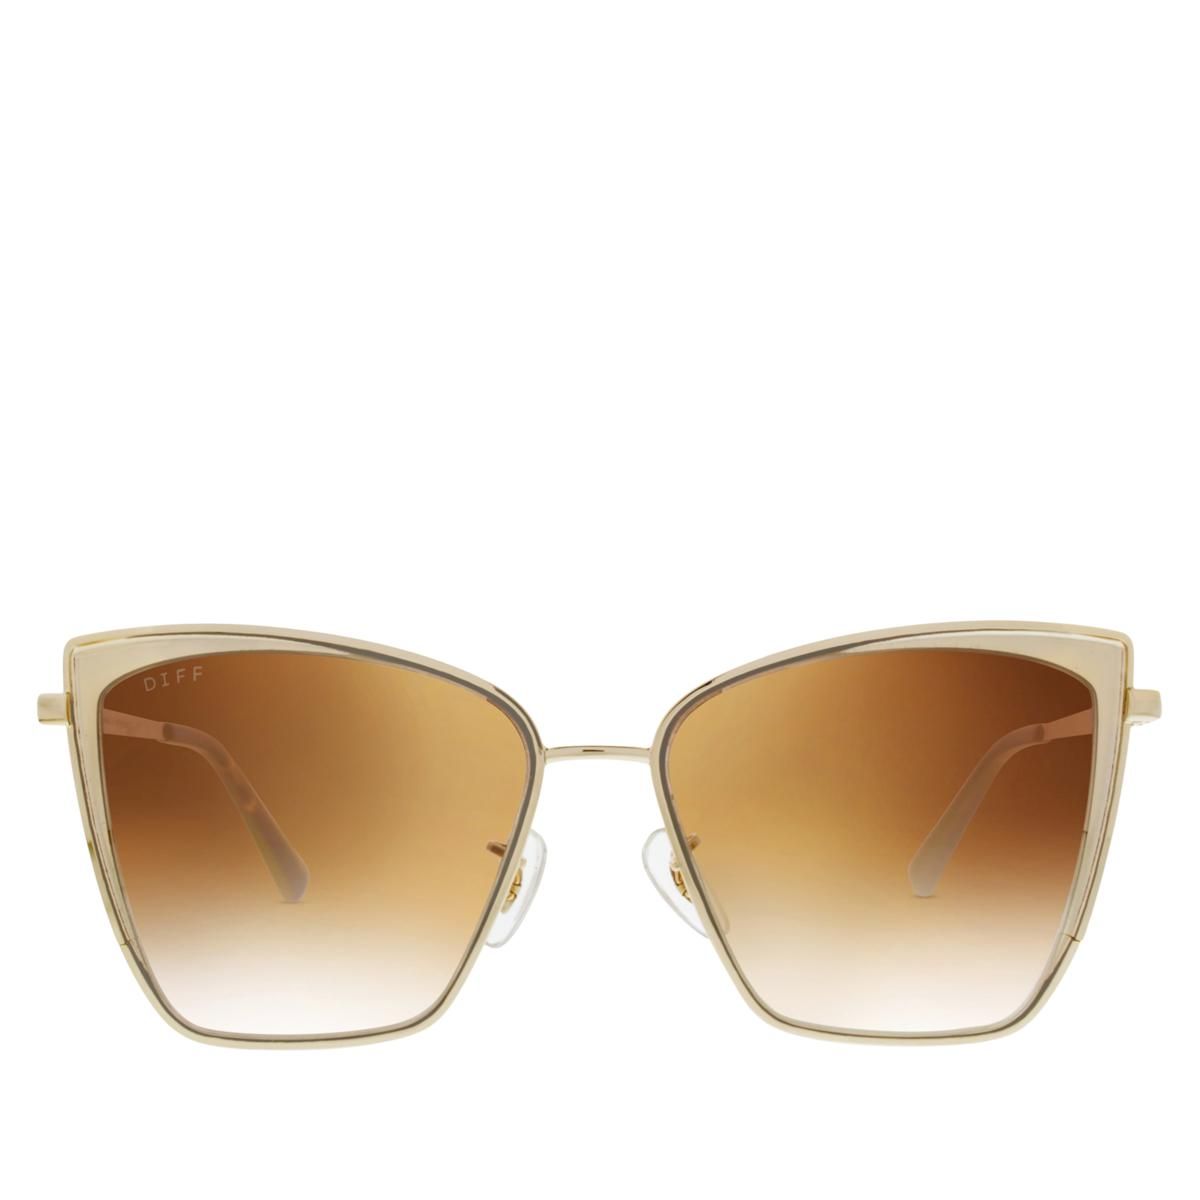 Diff Eyewear Becky Oversized Cat-Eye Polarized Sunglasses - 20717859 | HSN | HSN